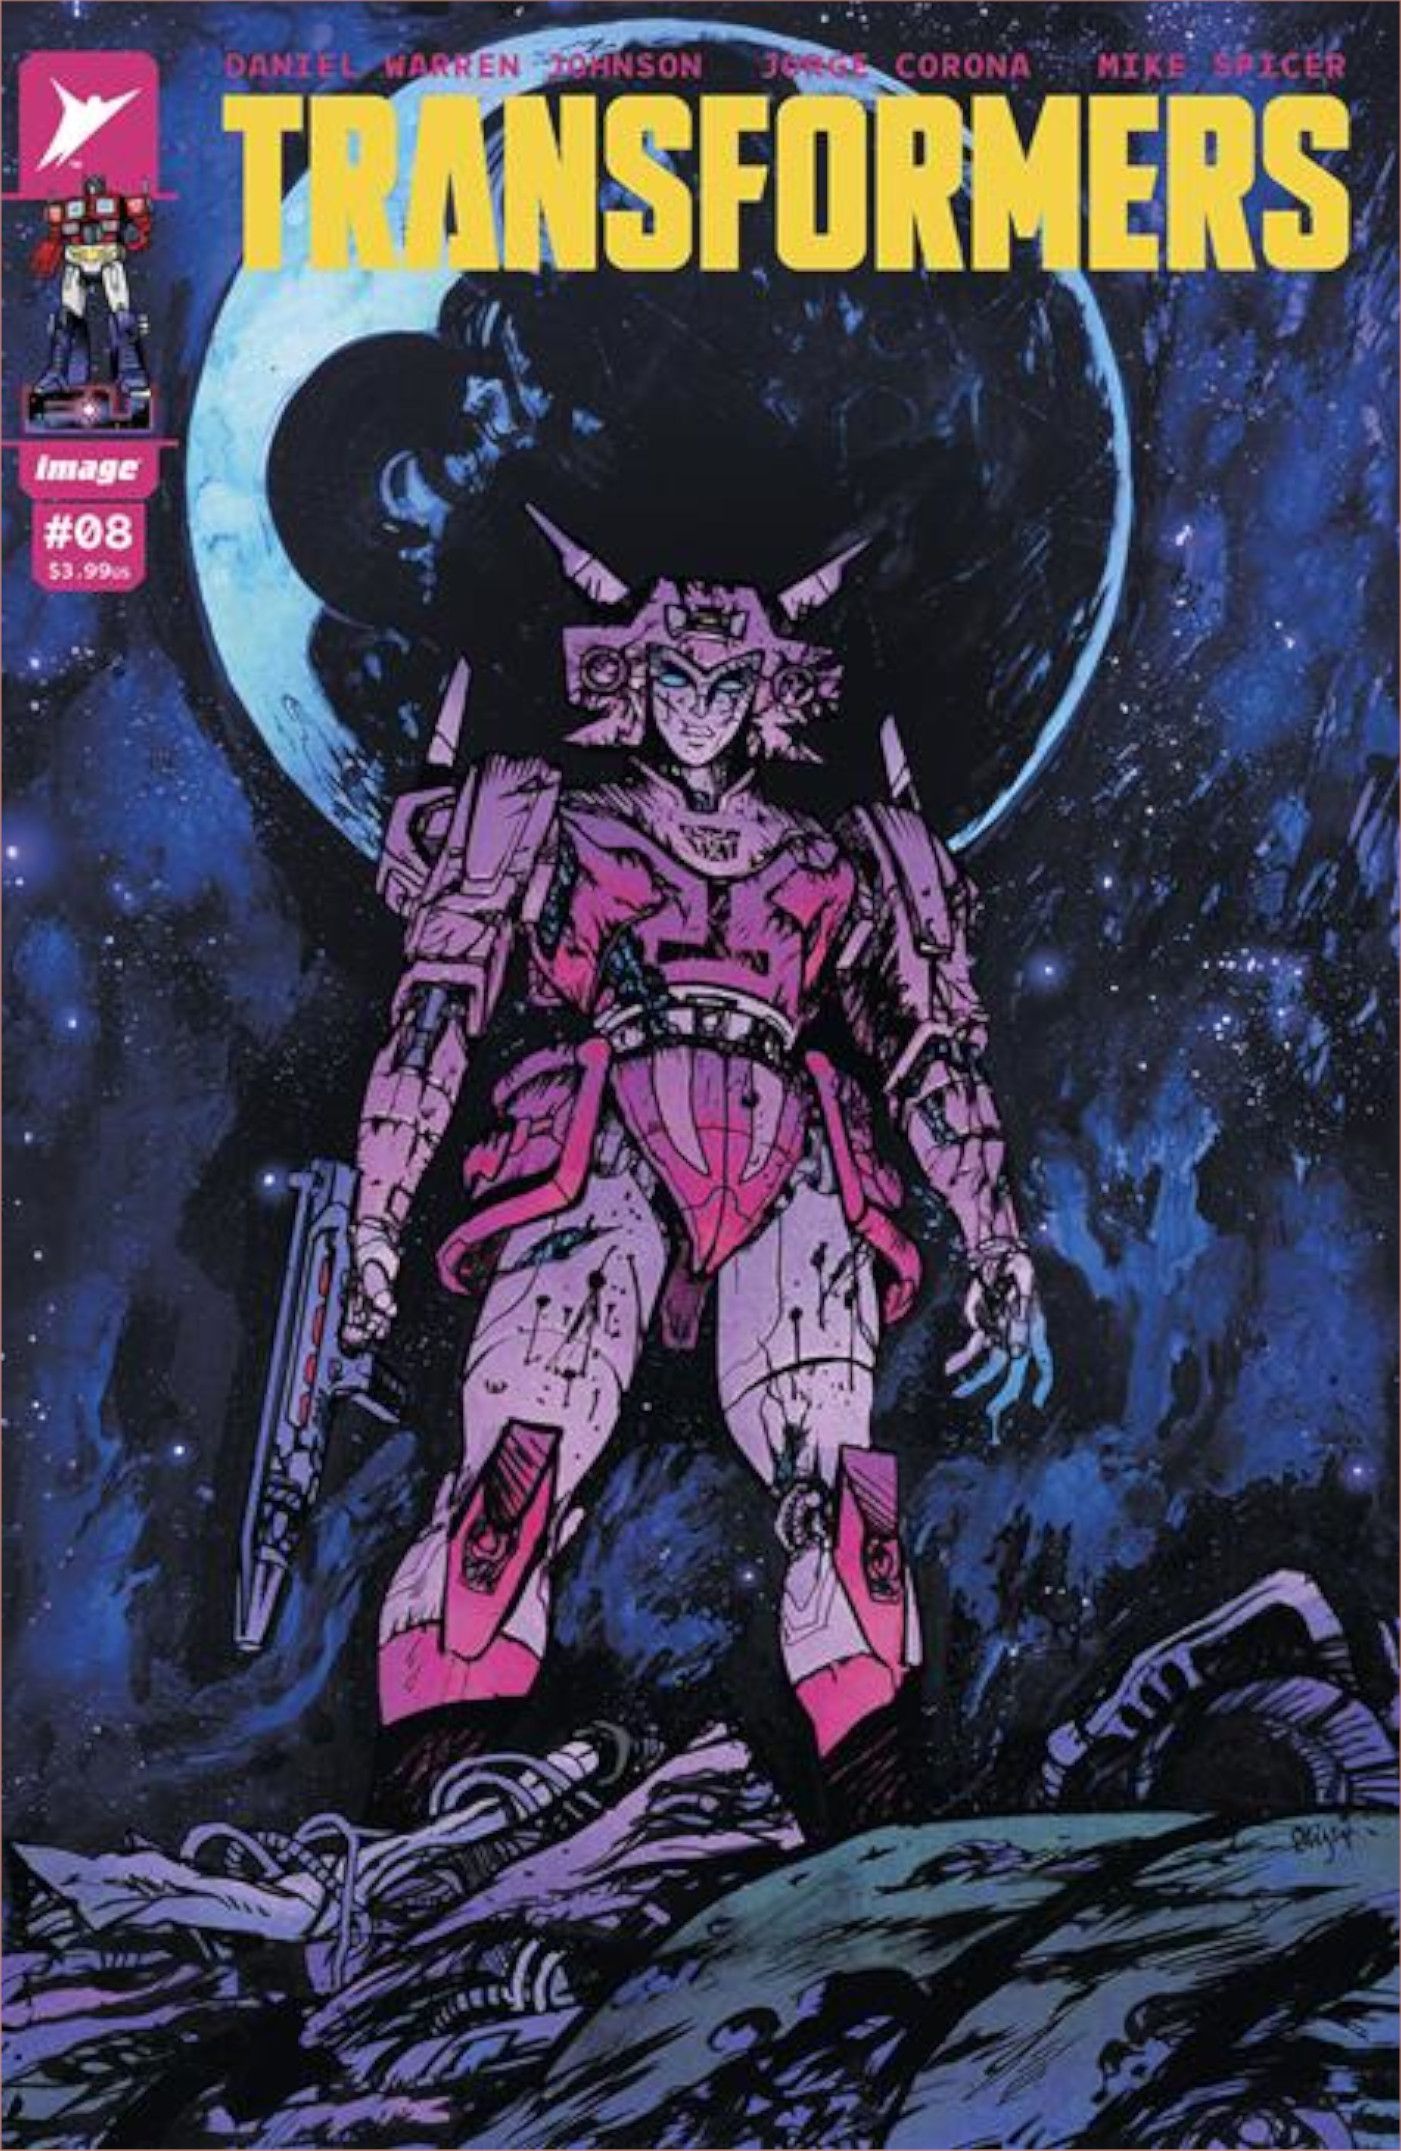 Transformers #8 Capa A de Daniel Warren Johnson, com participação de Elita One